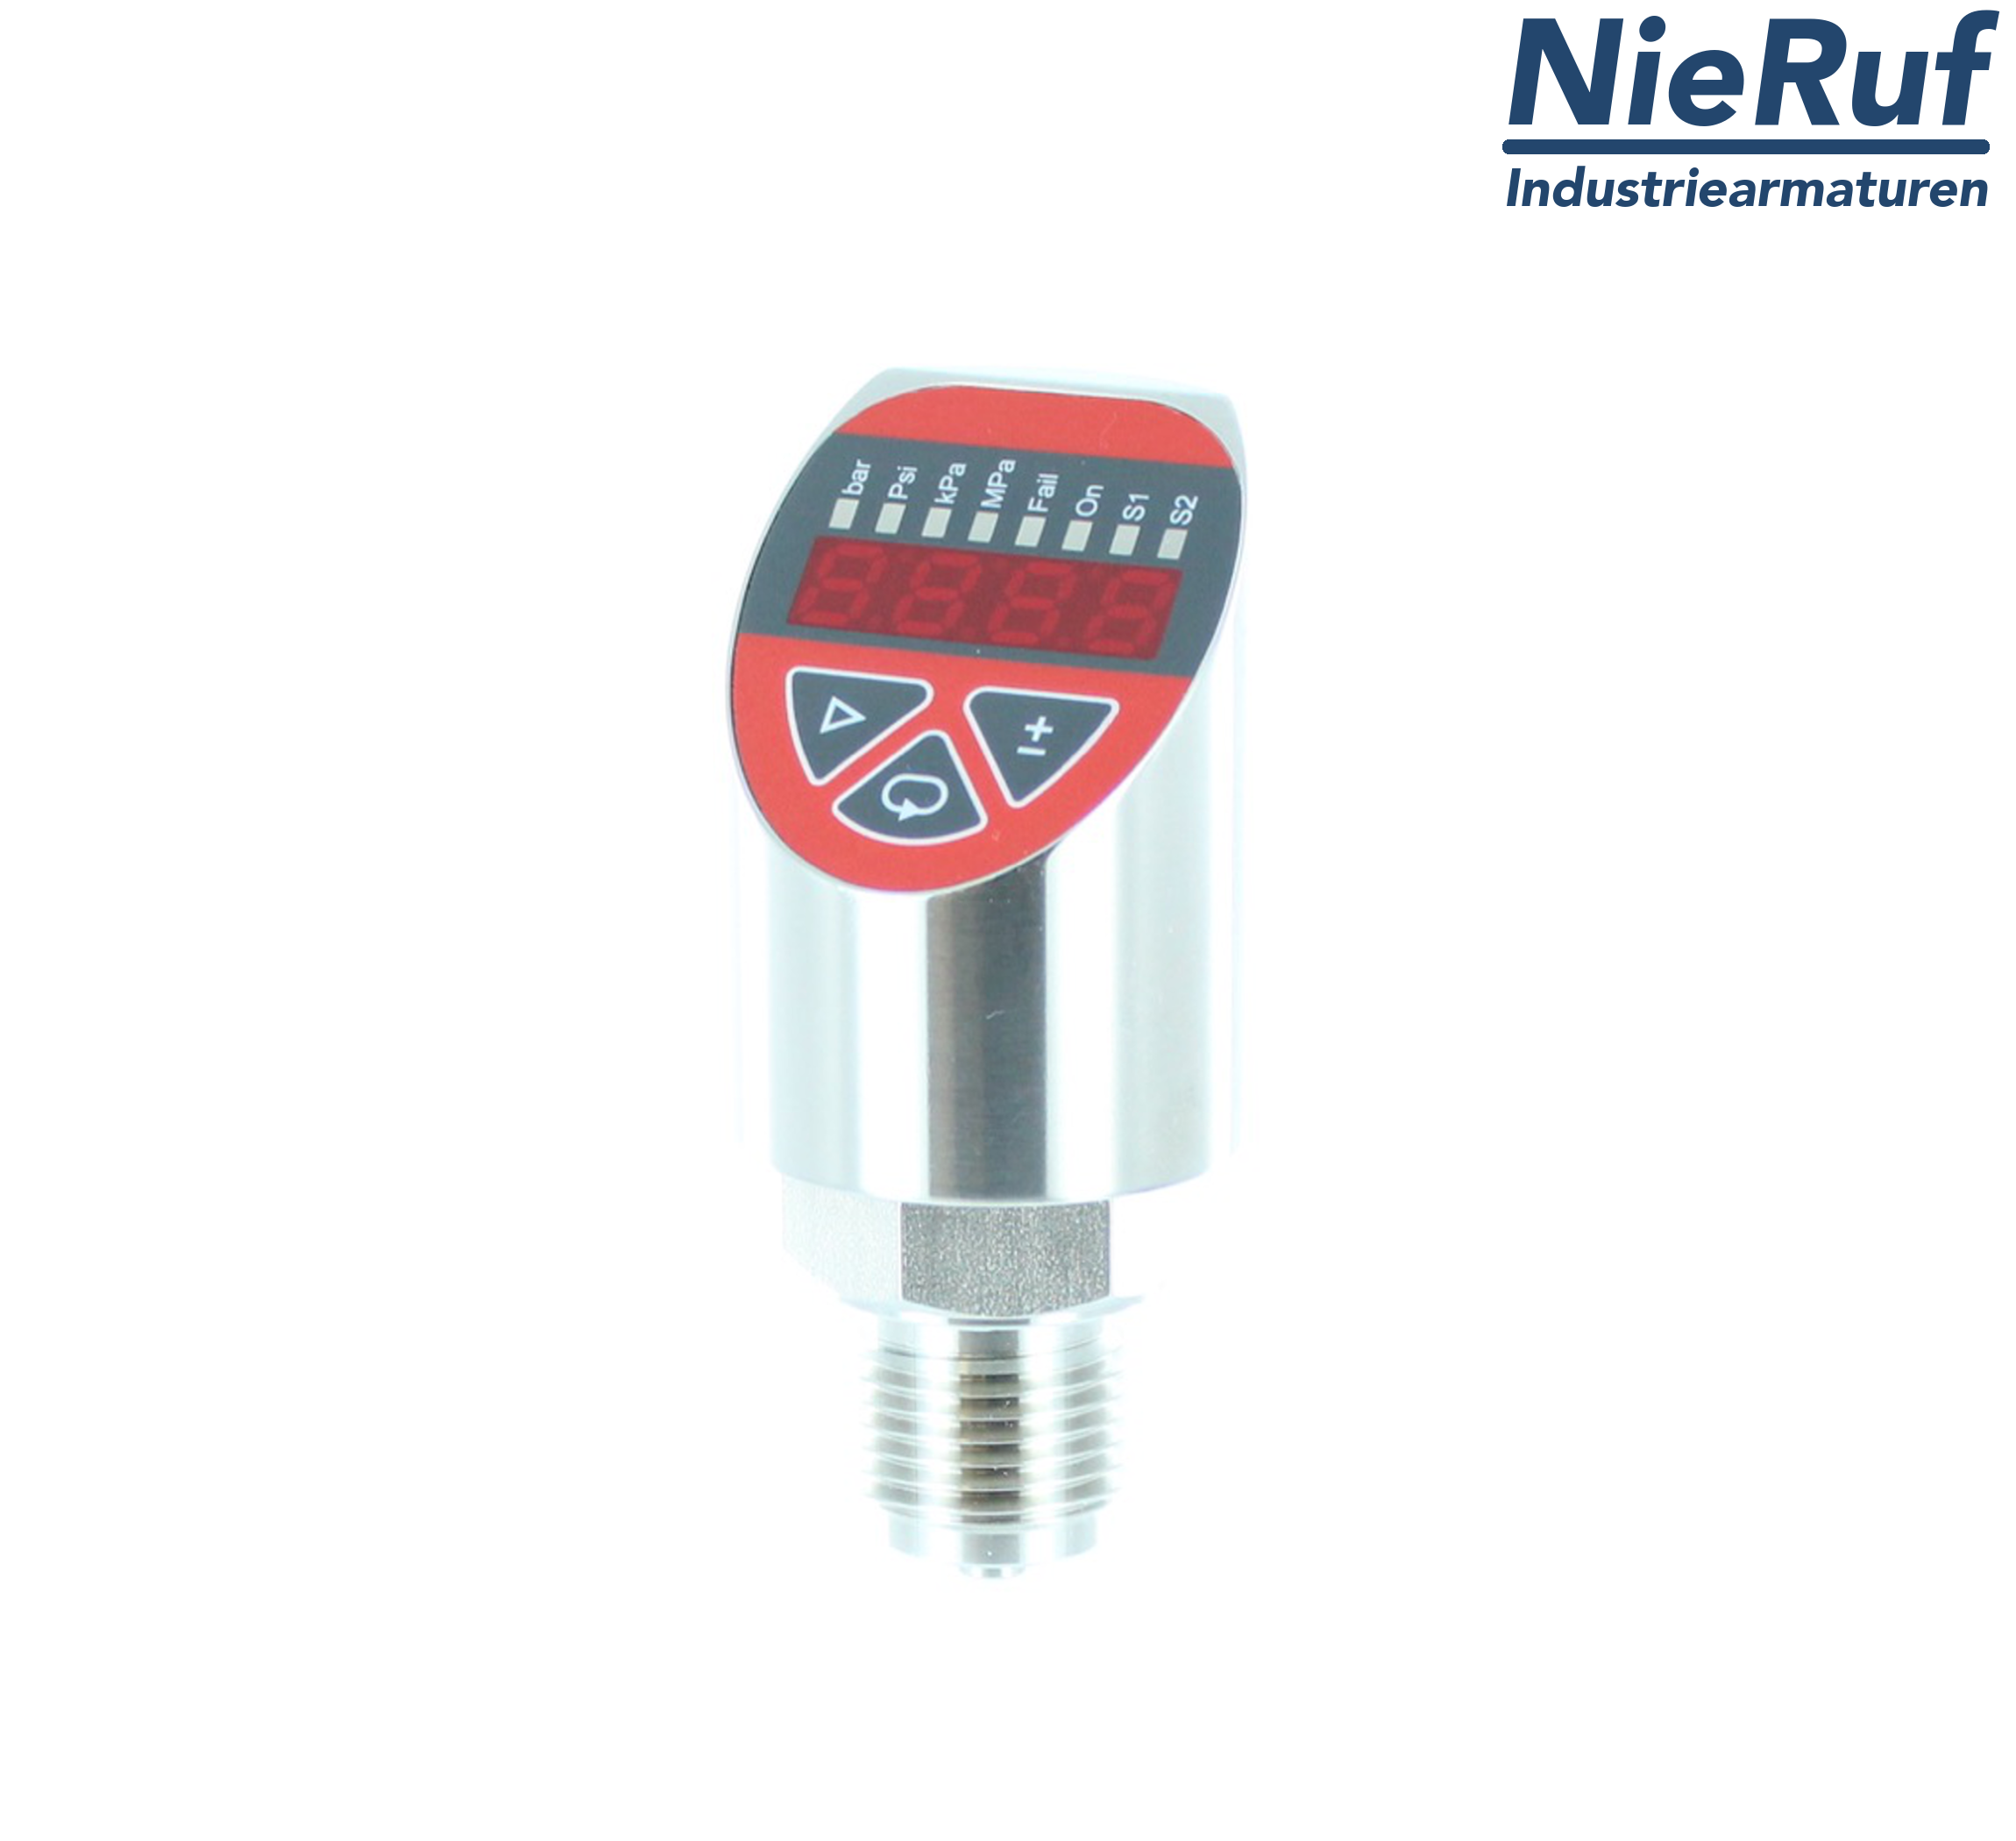 digital pressure sensor G 1/2" B IB 4-wire: 1xPNP, 1x4 - 20mA FPM 0,0 - 100,0 bar